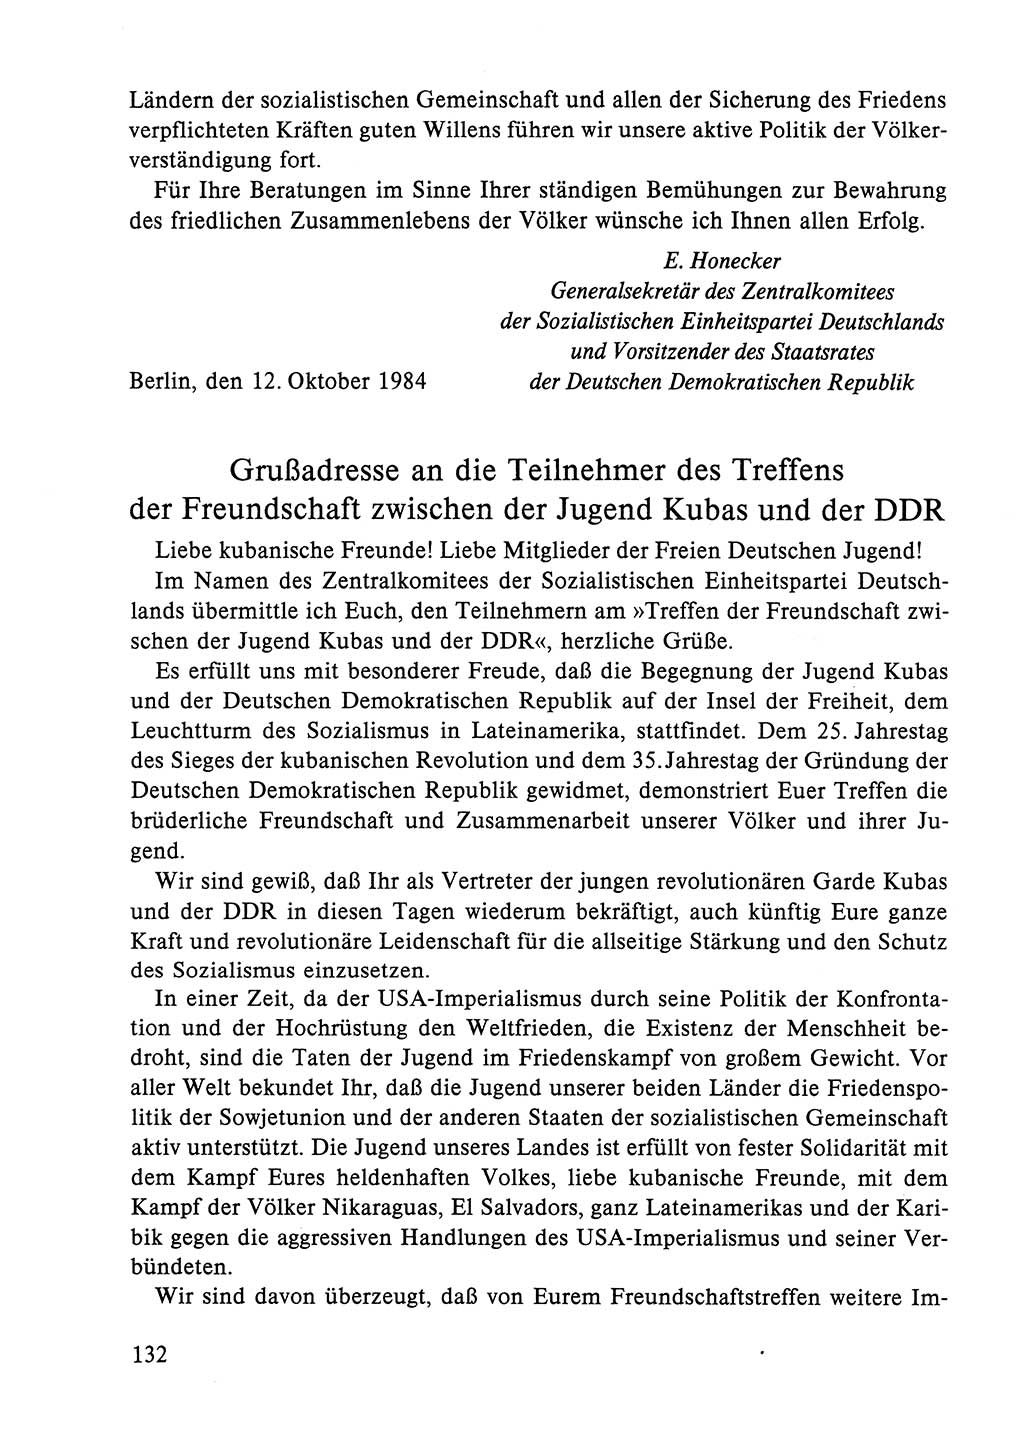 Dokumente der Sozialistischen Einheitspartei Deutschlands (SED) [Deutsche Demokratische Republik (DDR)] 1984-1985, Seite 295 (Dok. SED DDR 1984-1985, S. 295)